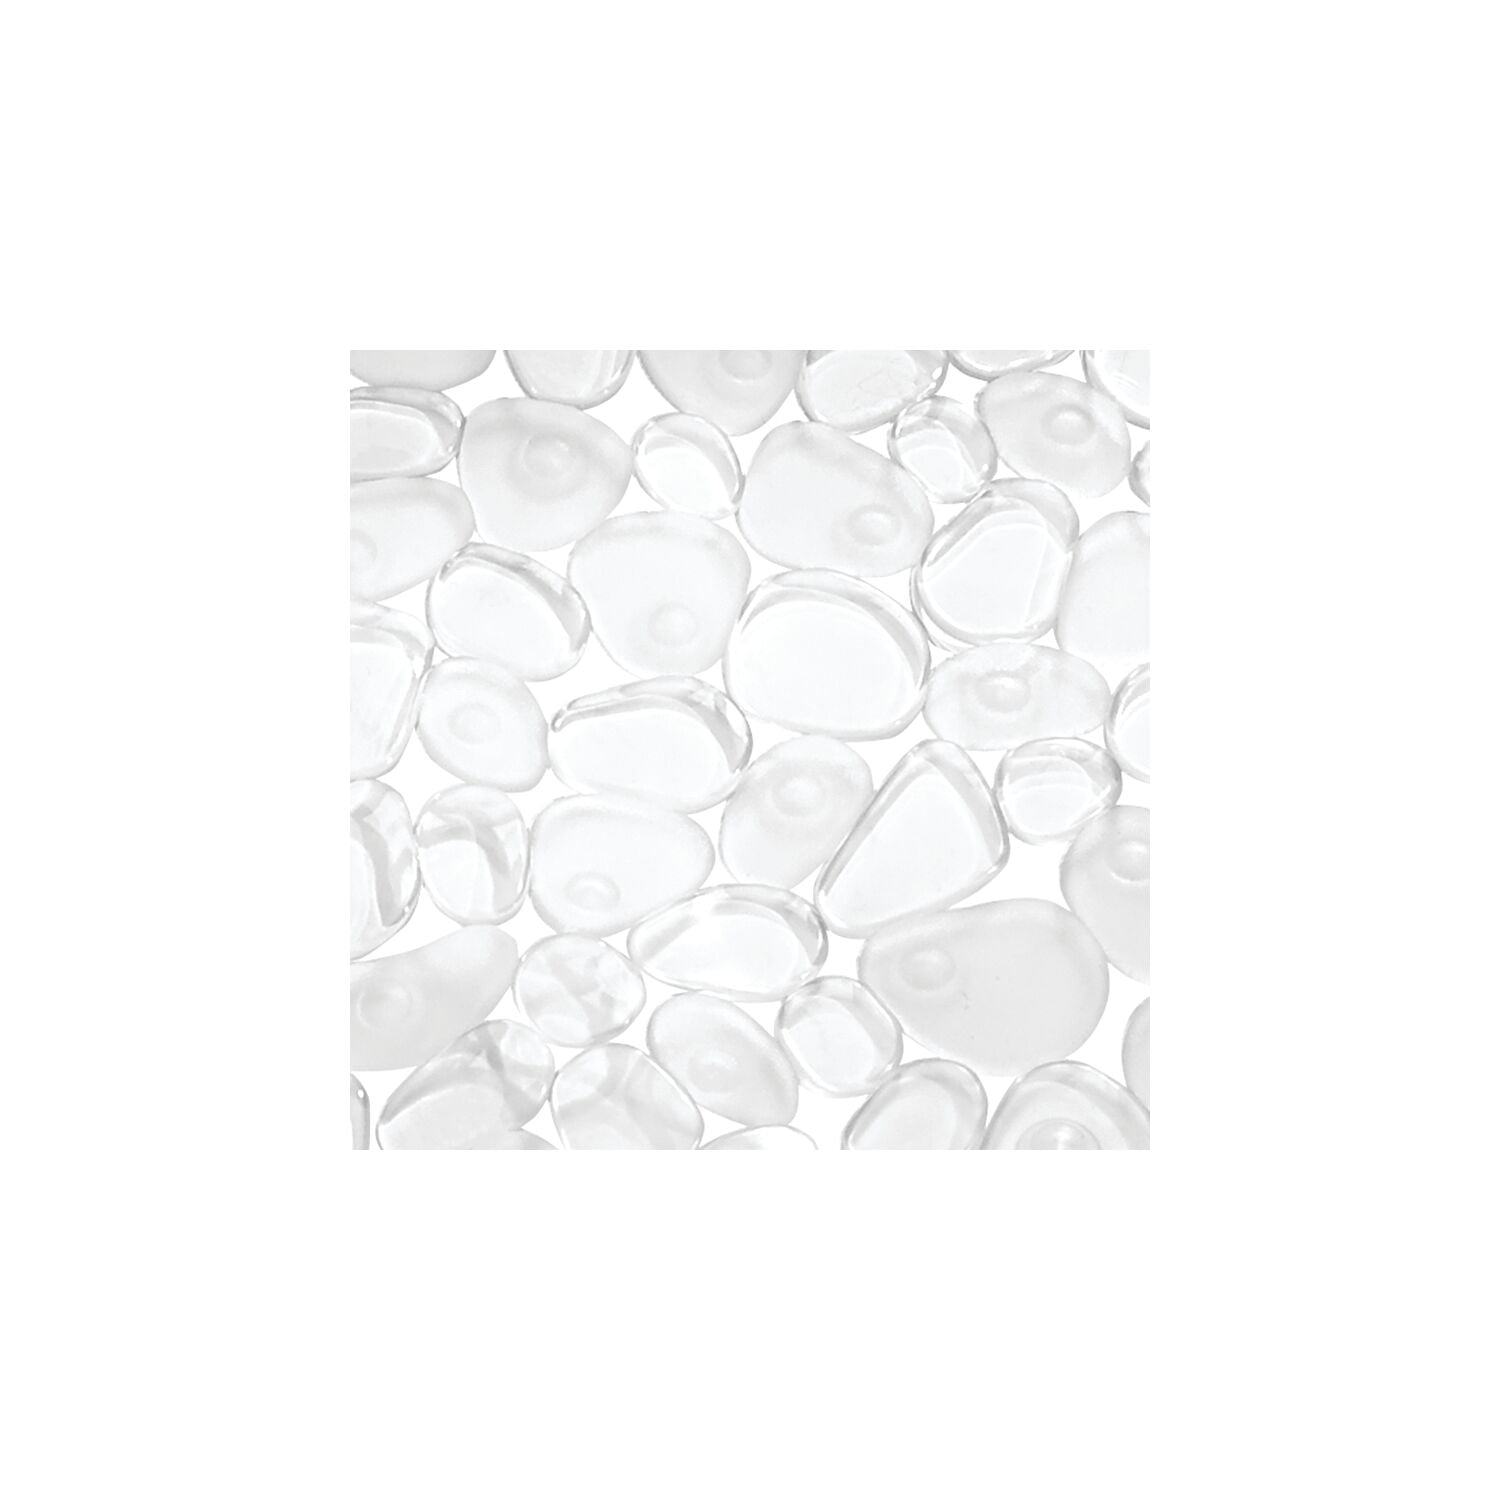 DI GRAZIA PVC (Polyvinyl Chloride), Plastic Bathroom Mat - Buy DI